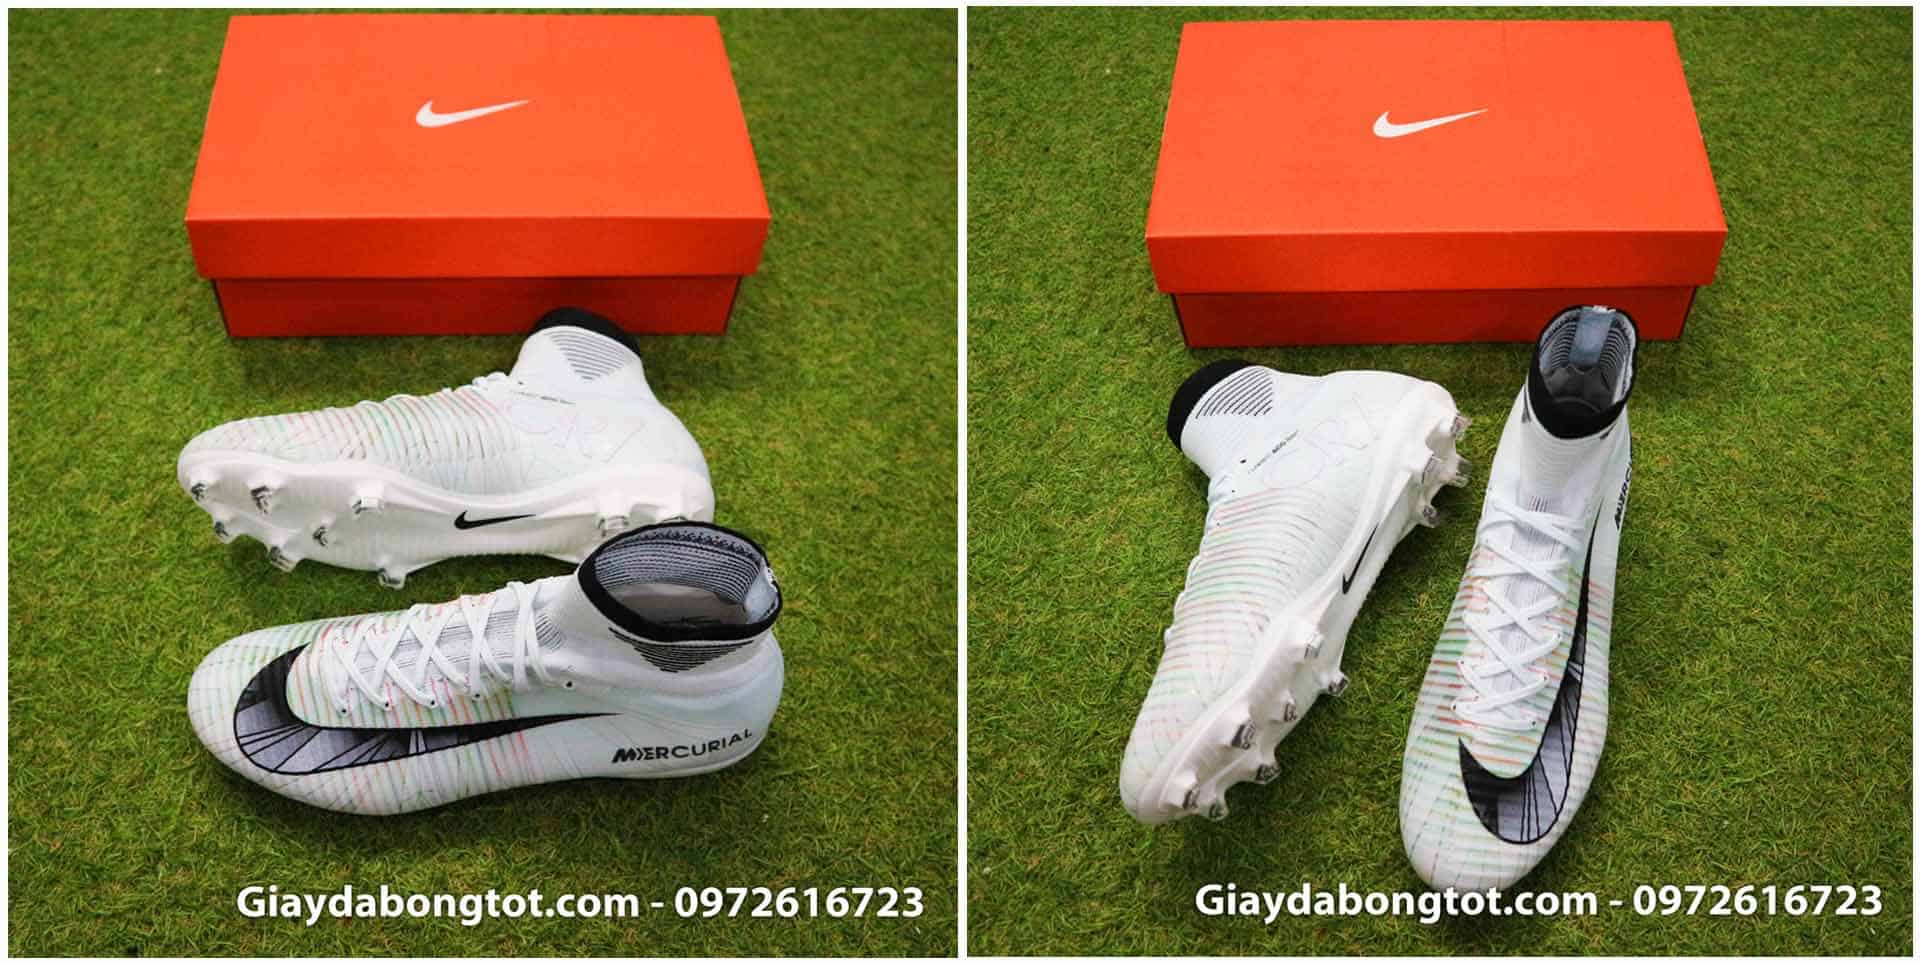 Giày đá bóng đinh cao giá rẻ Fake1, Superfake có chất lượng tốt nên sản xuất từ các nhà máy lớn ở Trung Quốc